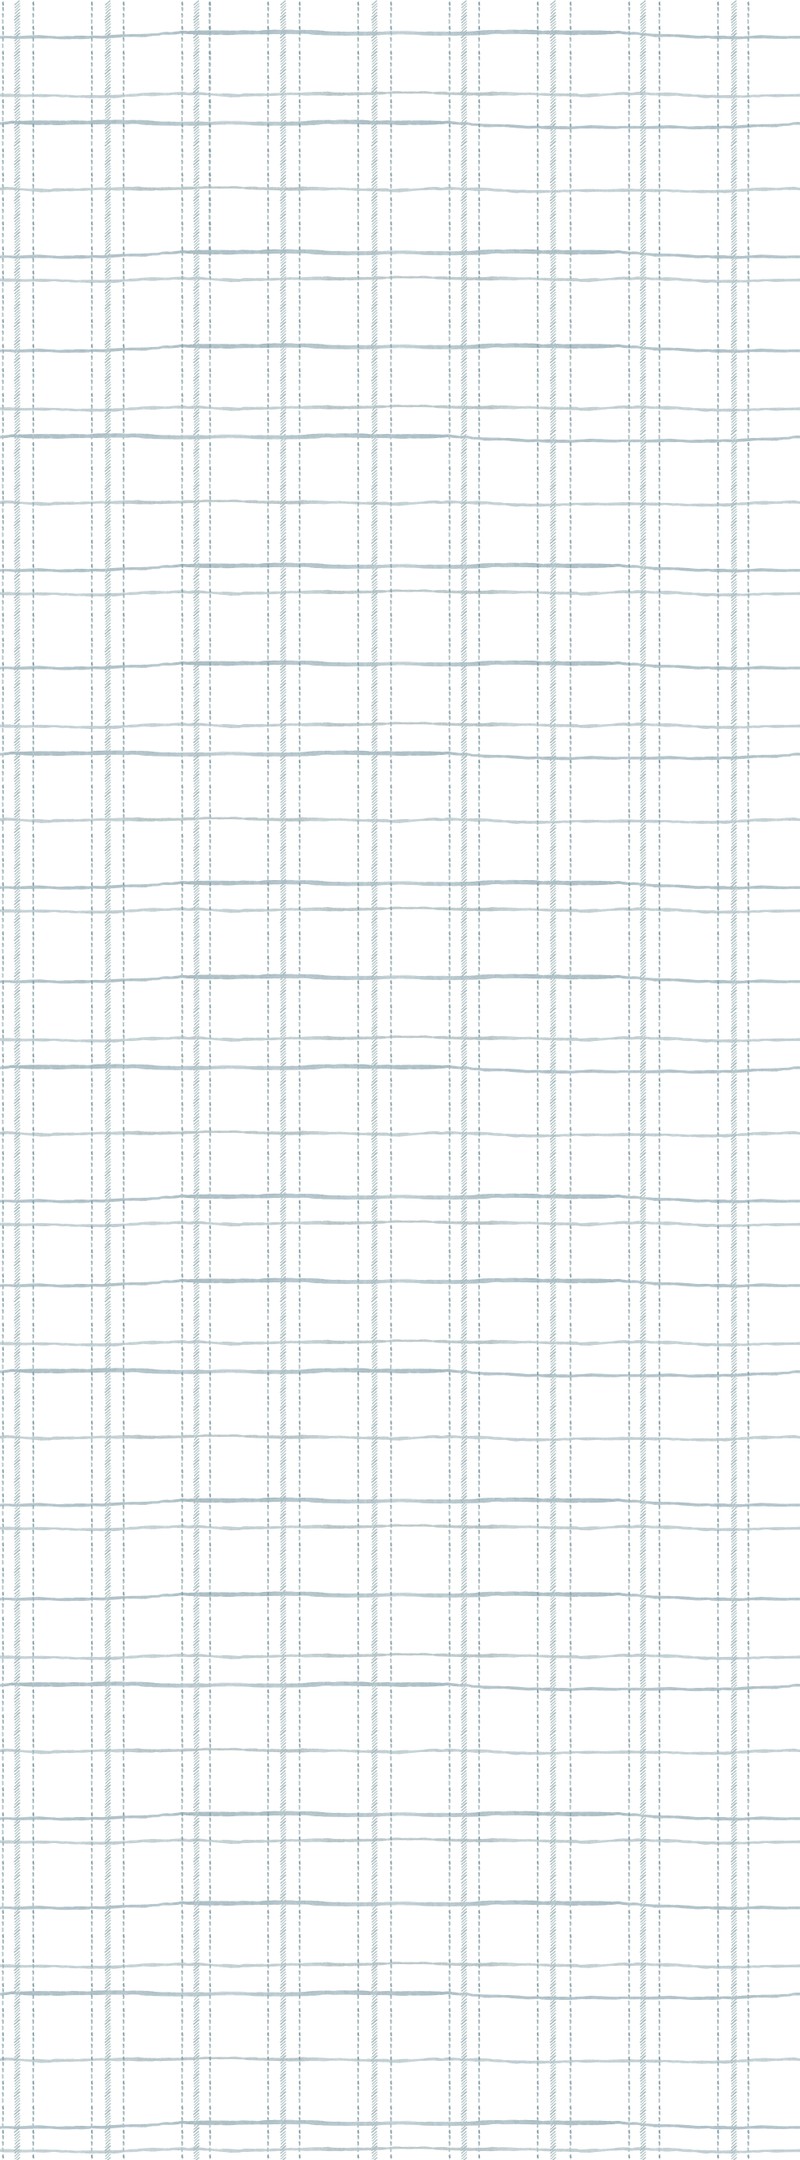 Papel de parede xadrez pontos irregulares azul T.Design - 100% celulose